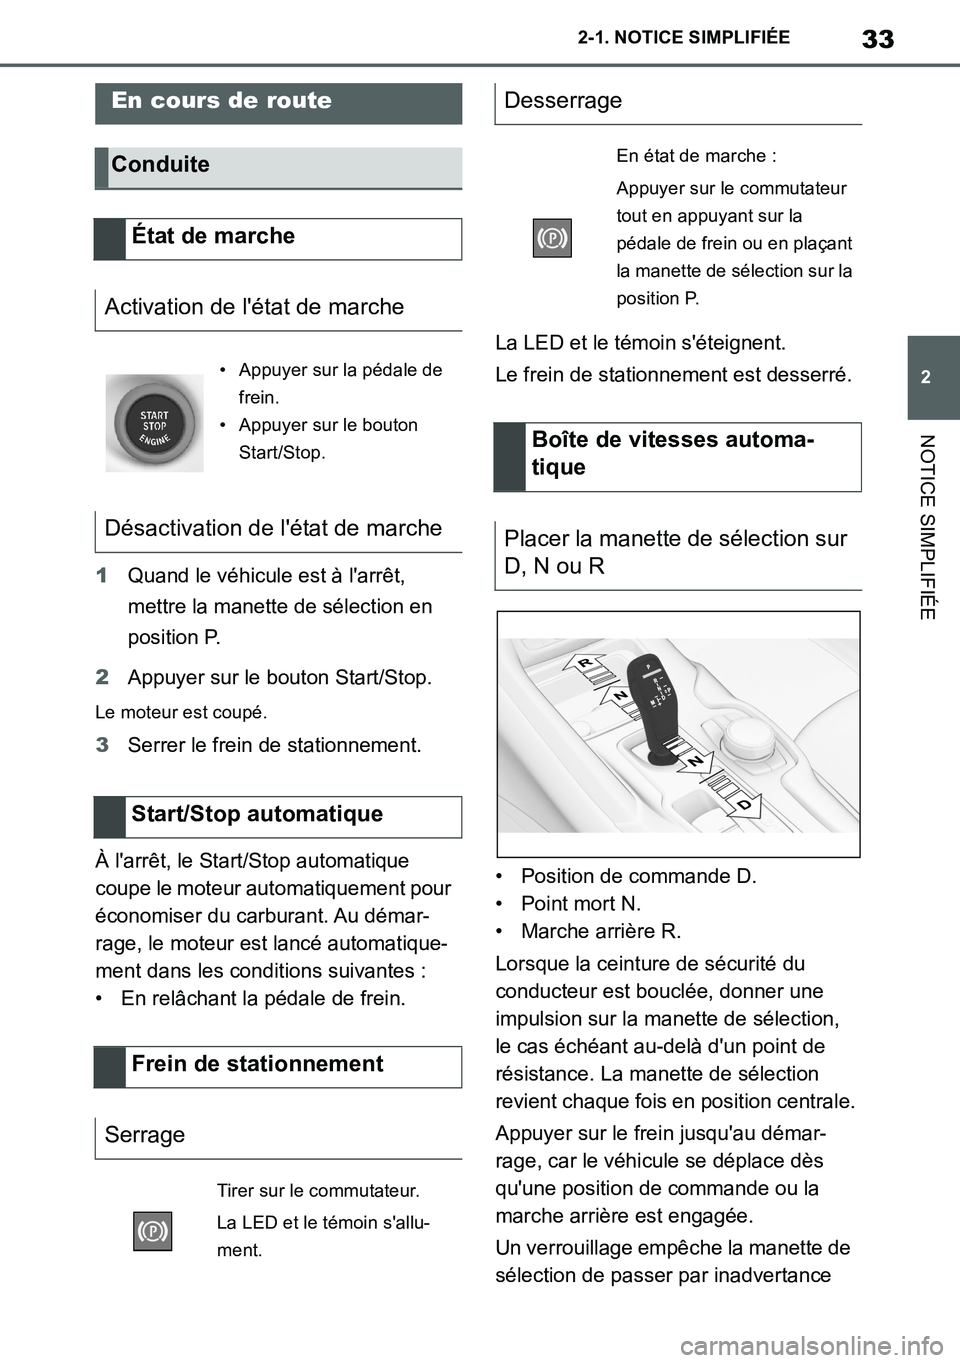 TOYOTA SUPRA 2020  Notices Demploi (in French) 33
2
Supra Owners Manual_EK
2-1. NOTICE SIMPLIFIÉE
NOTICE SIMPLIFIÉE
1Quand le véhicule est à larrêt, 
mettre la manette de sélection en 
position P.
2Appuyer sur le bouton Start/Stop.
Le mote